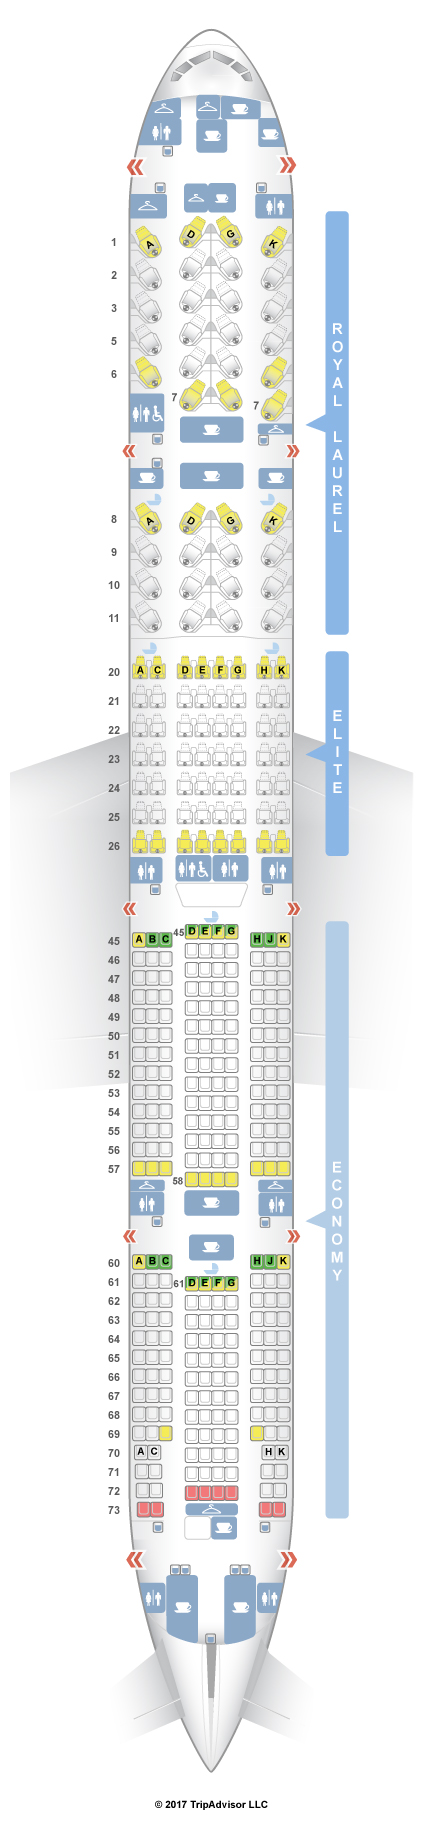 United Boeing 777 300Er Seating Plan